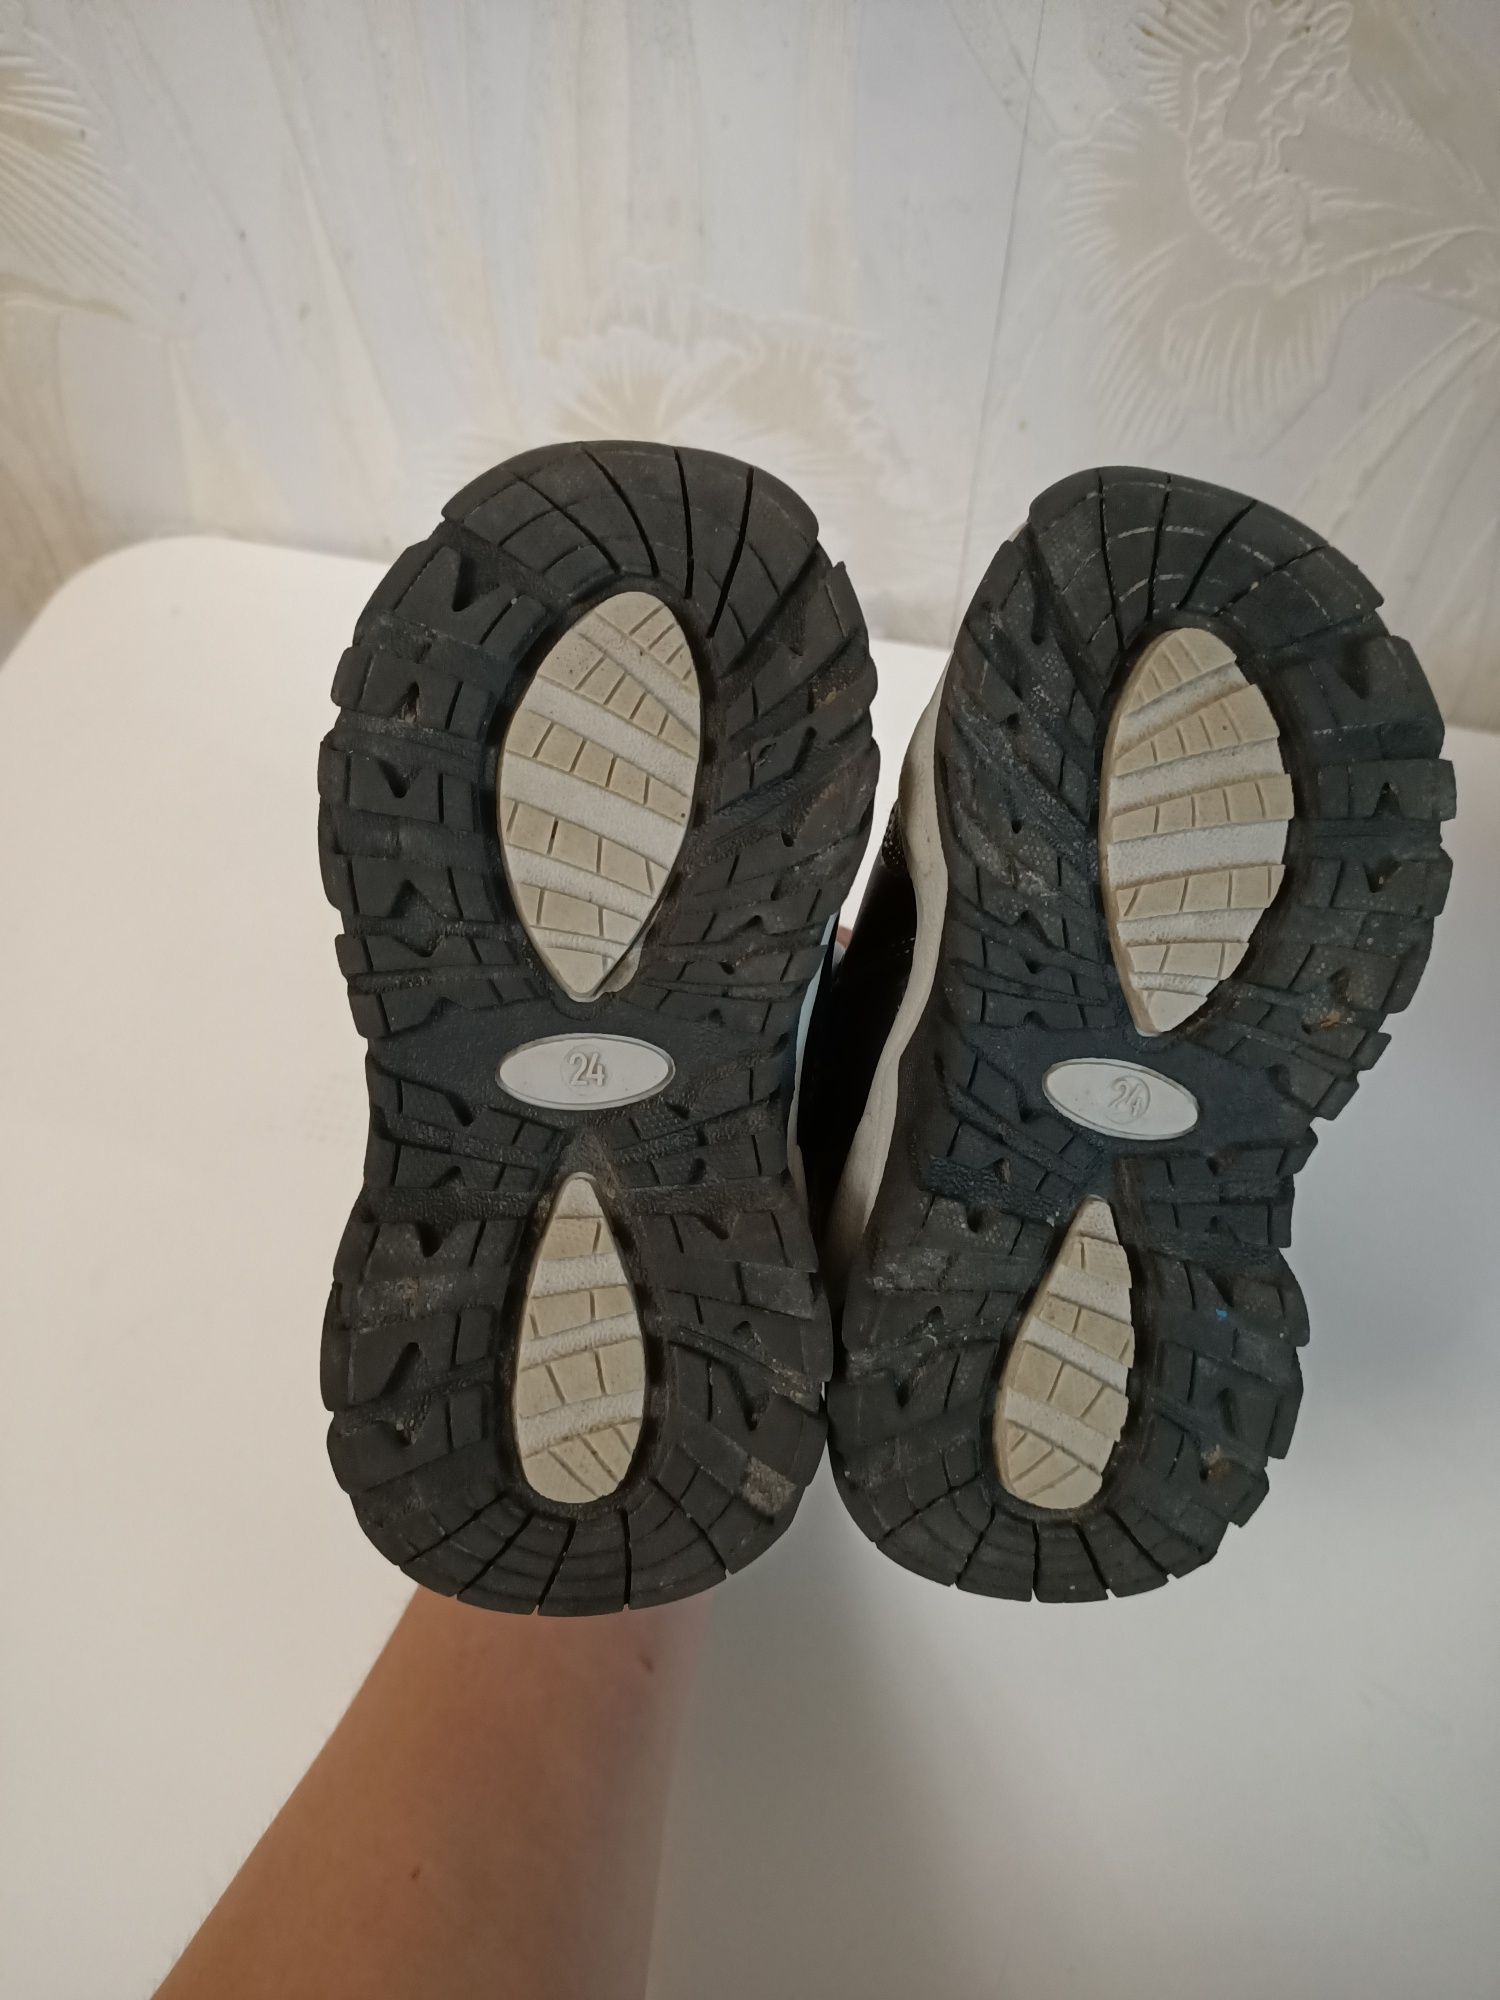 Зимове взуття Sprocs 24 розмір, 15.5 см устілка